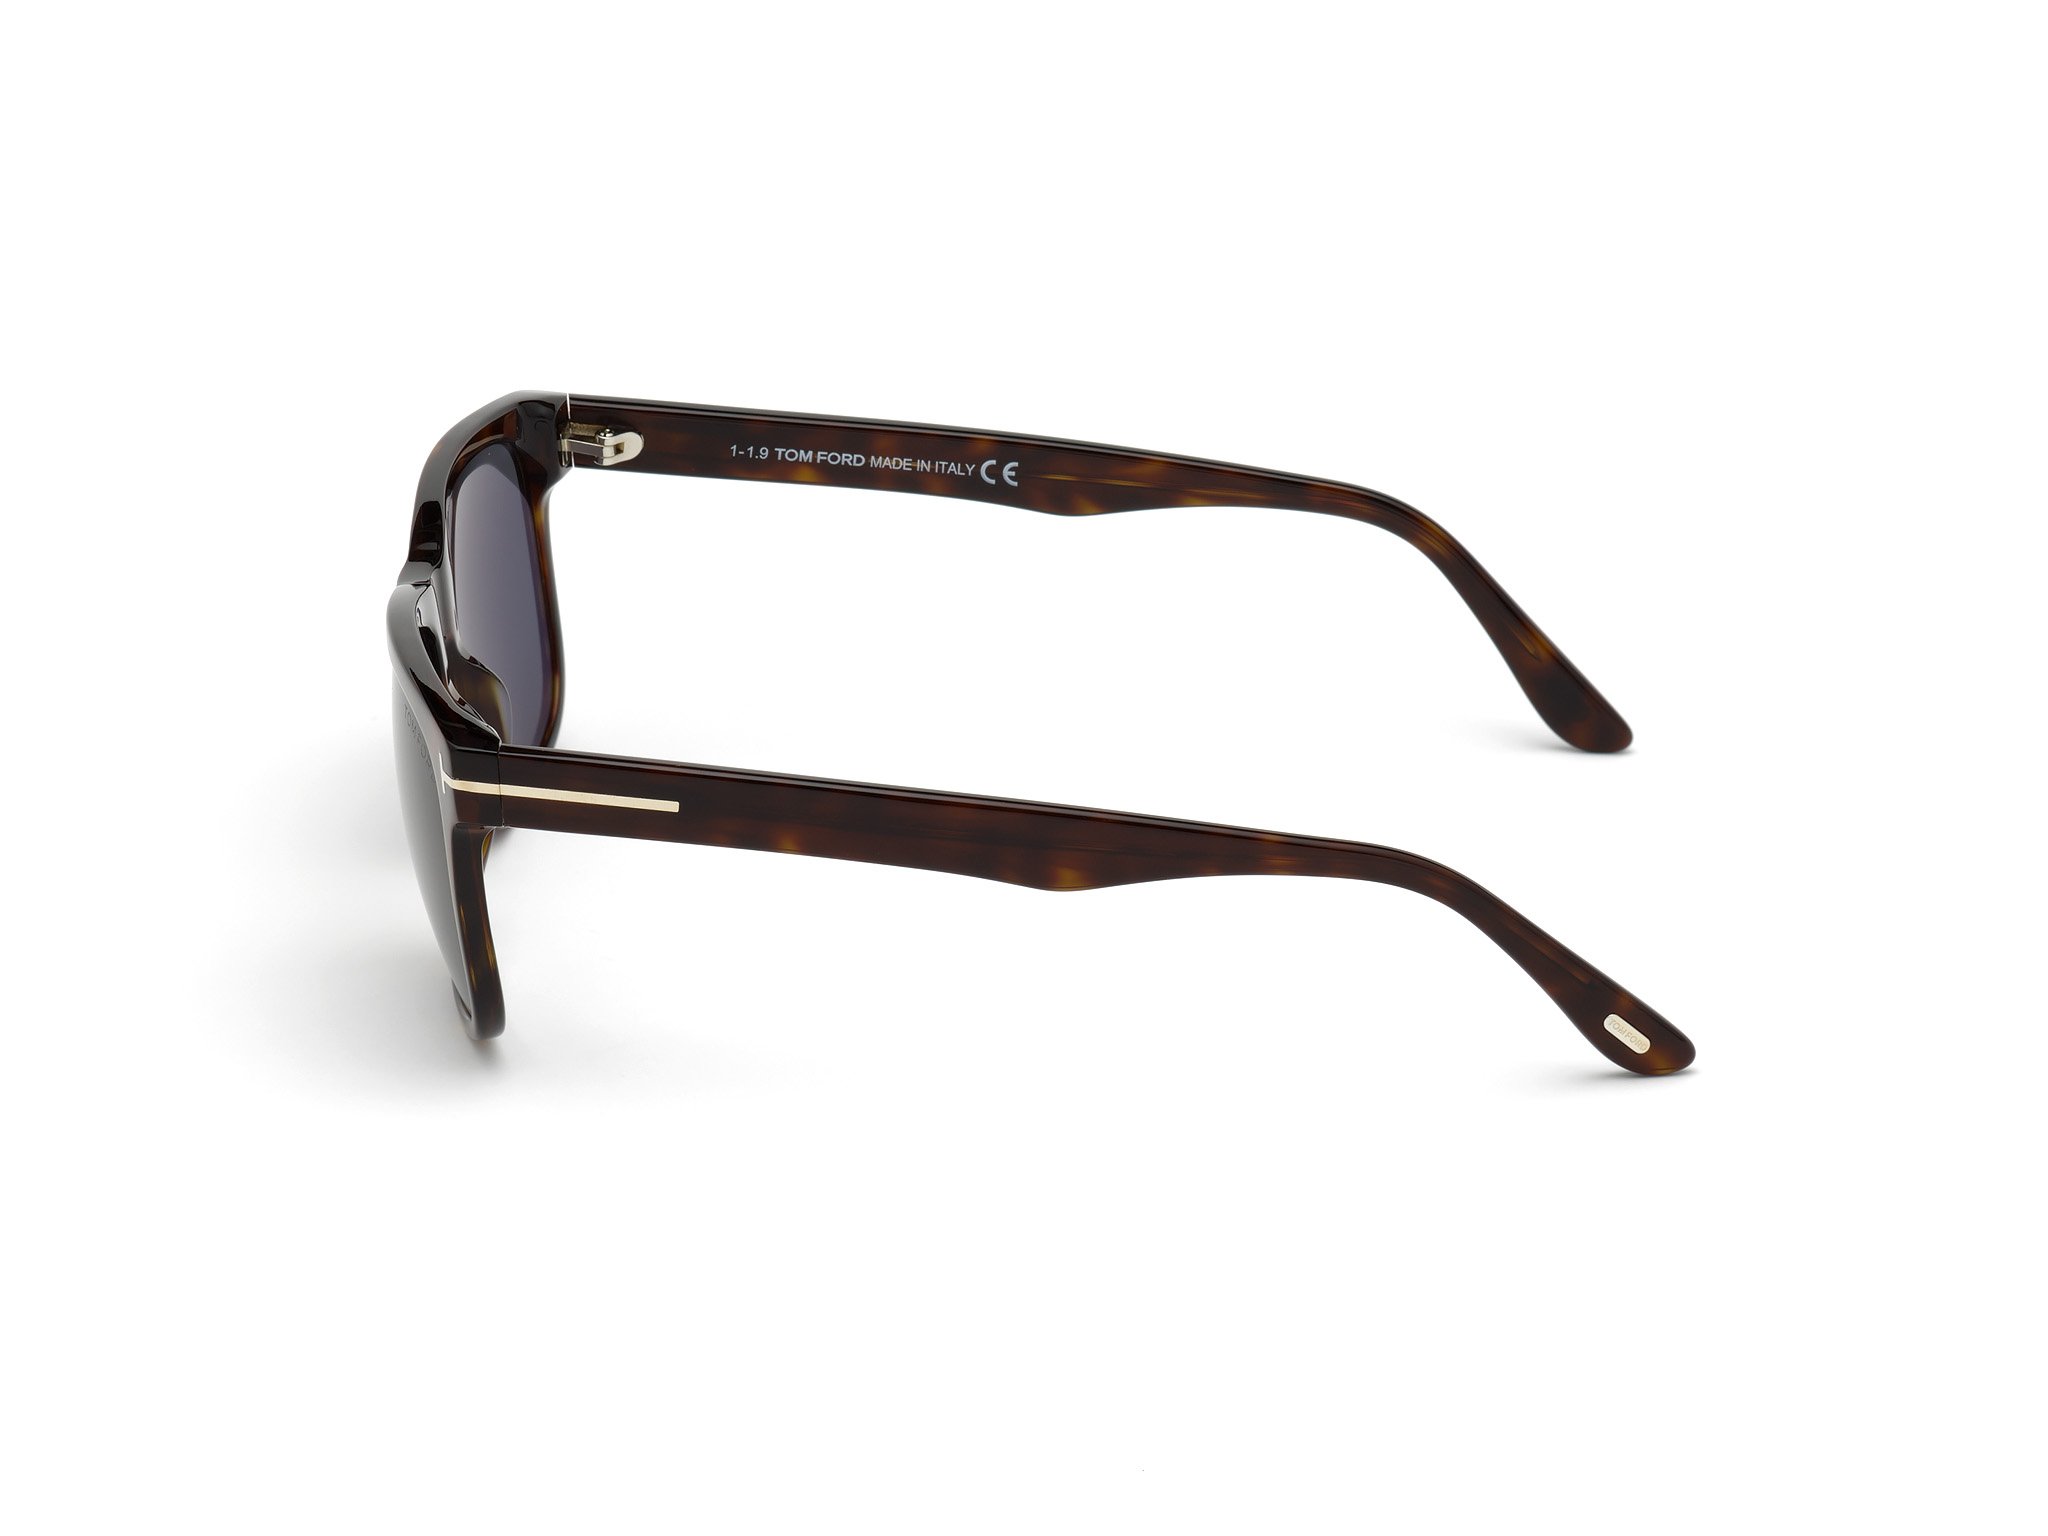 Das Bild zeigt die Sonnenbrille STEPHENSON FT0775 von der Marke Tom Ford in havanna seitlich